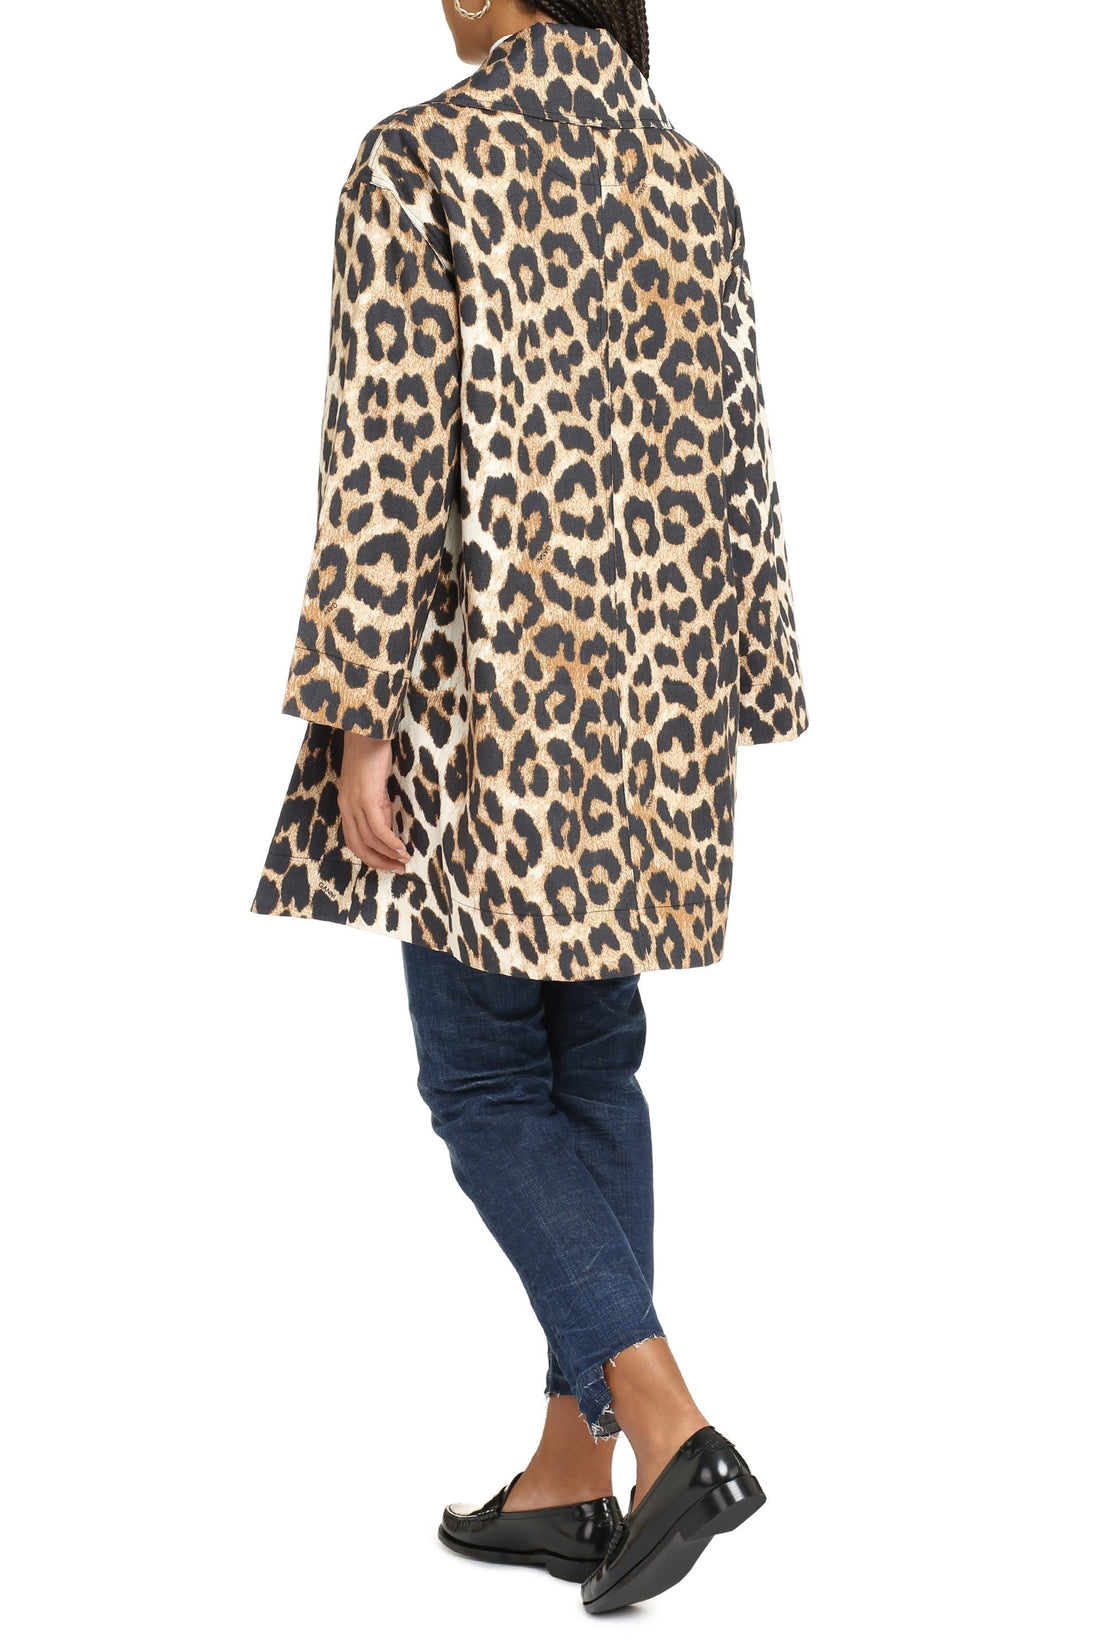 GANNI-OUTLET-SALE-Leopard print jacket-ARCHIVIST